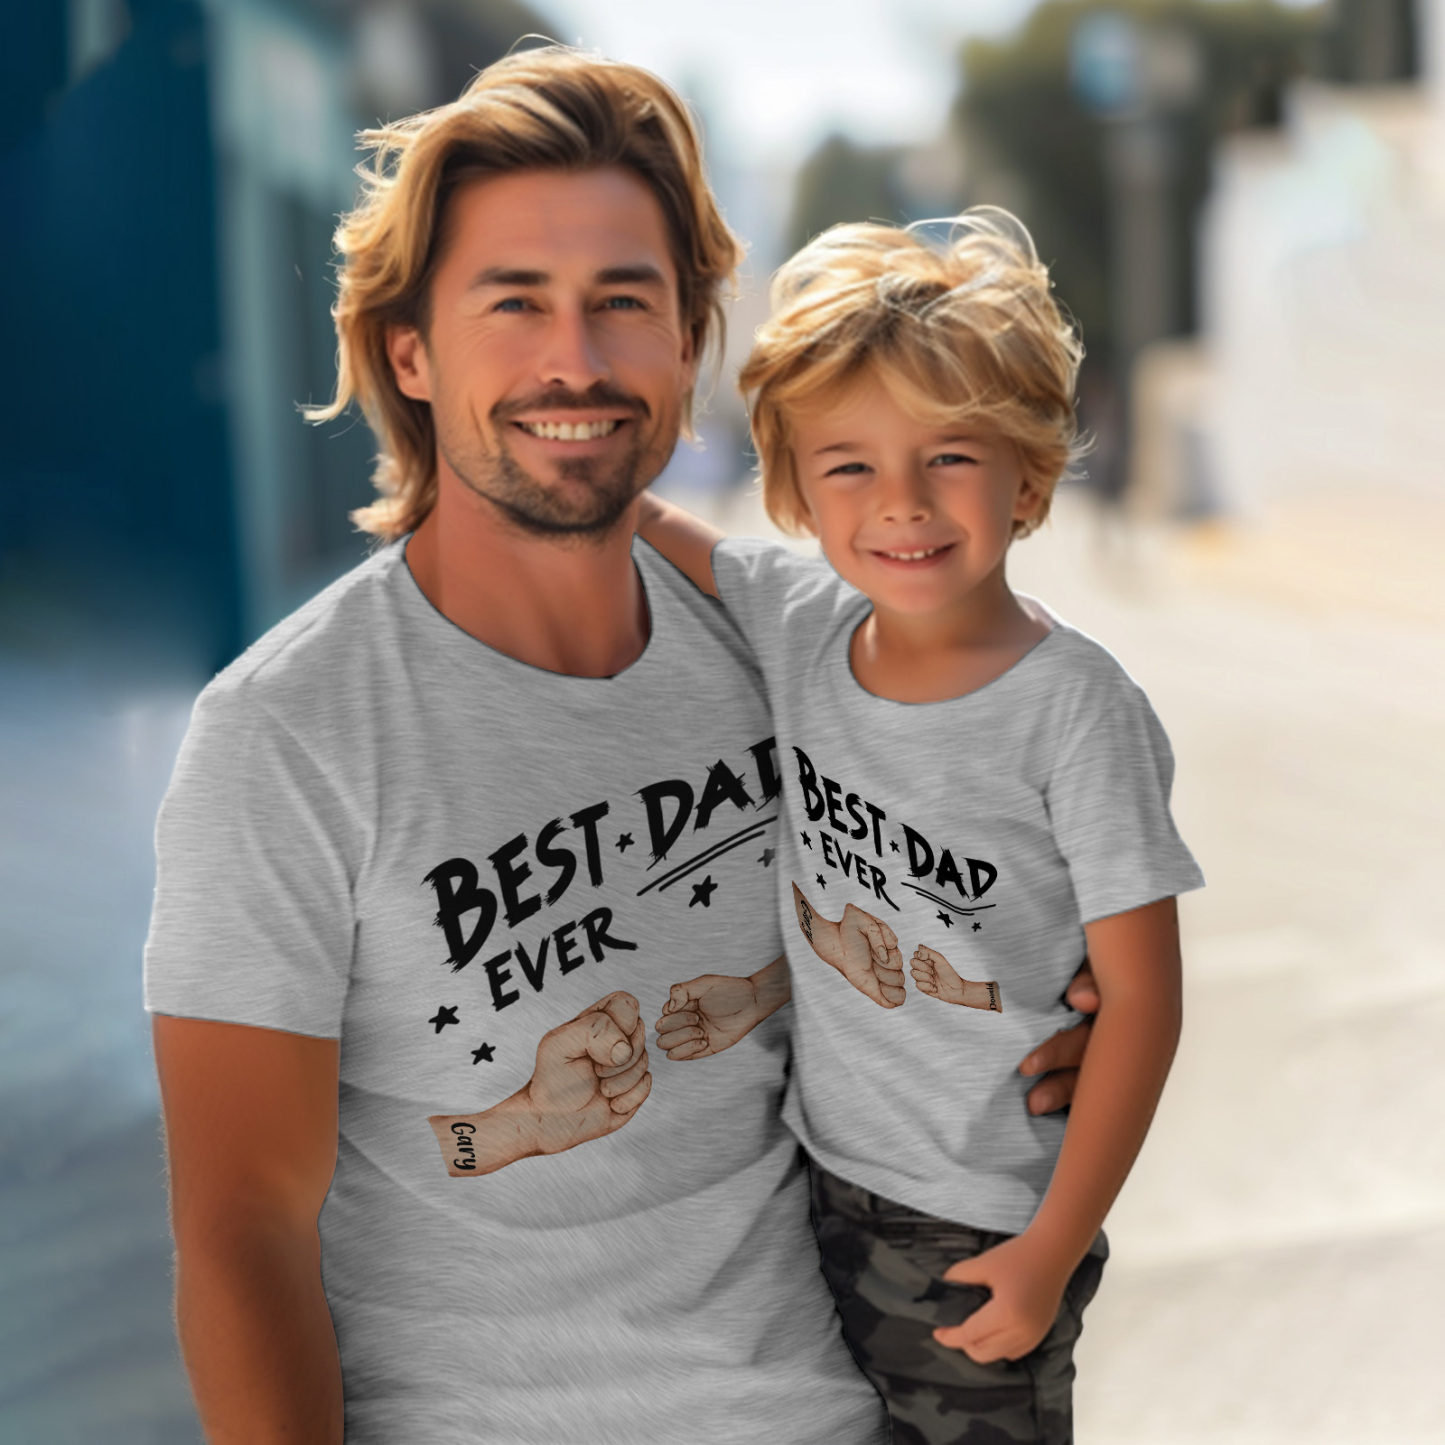 T-shirt Père Personnalisé Meilleur Papa De Tous Les Temps Pour La Fête Des Pères - soufeelfr